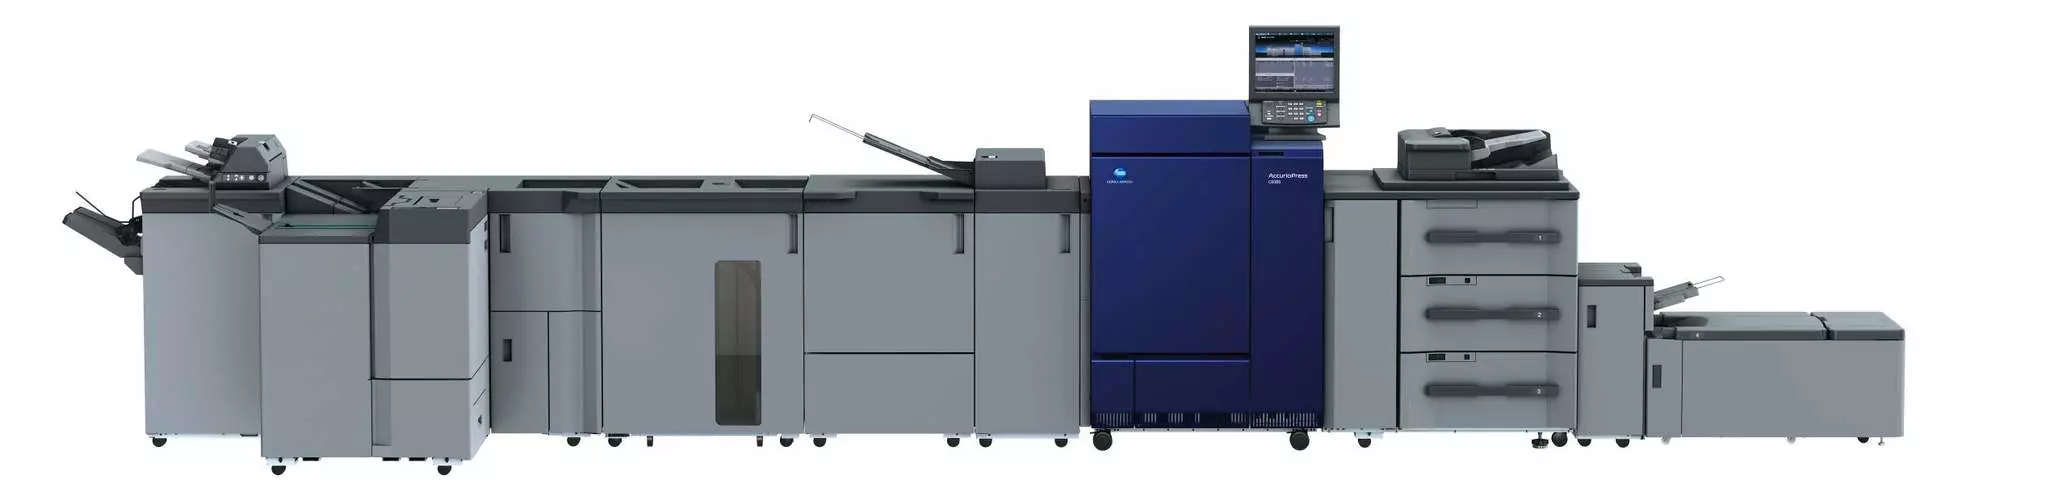 Impresora profesional AccurioPress C6085 de Konica Minolta